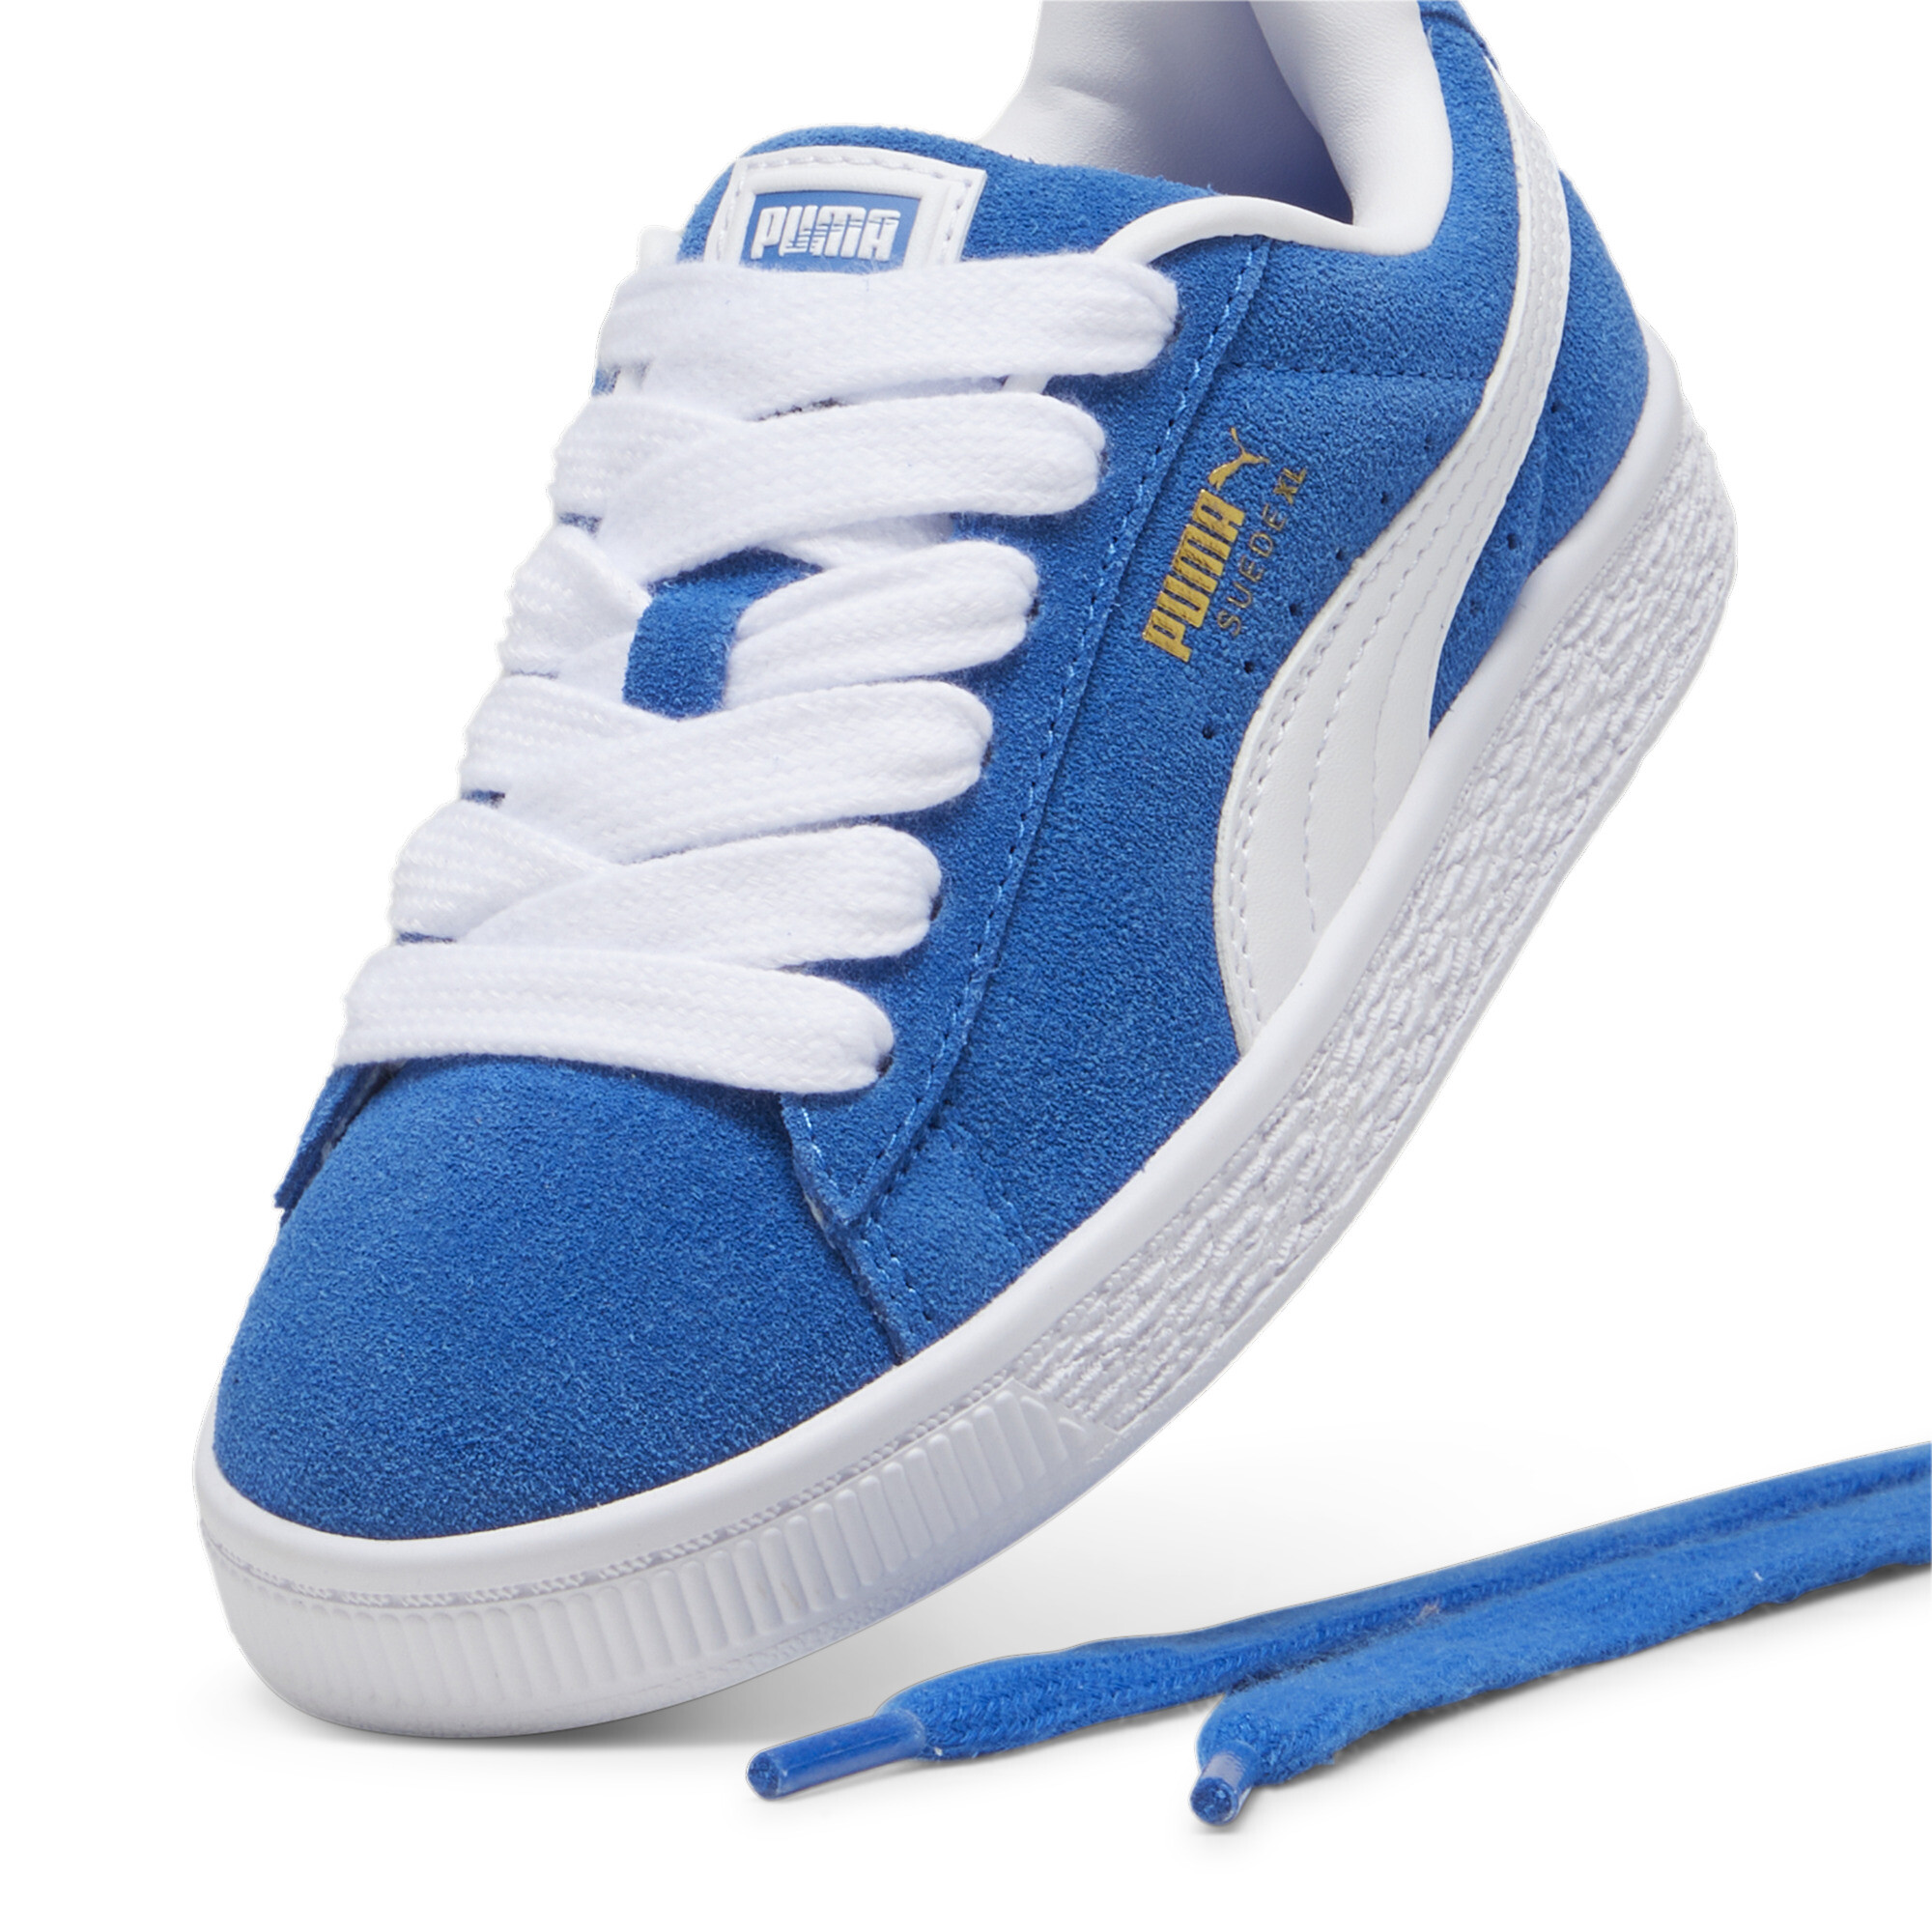 Kids' PUMA Suede XL Sneakers In Blue, Size EU 30